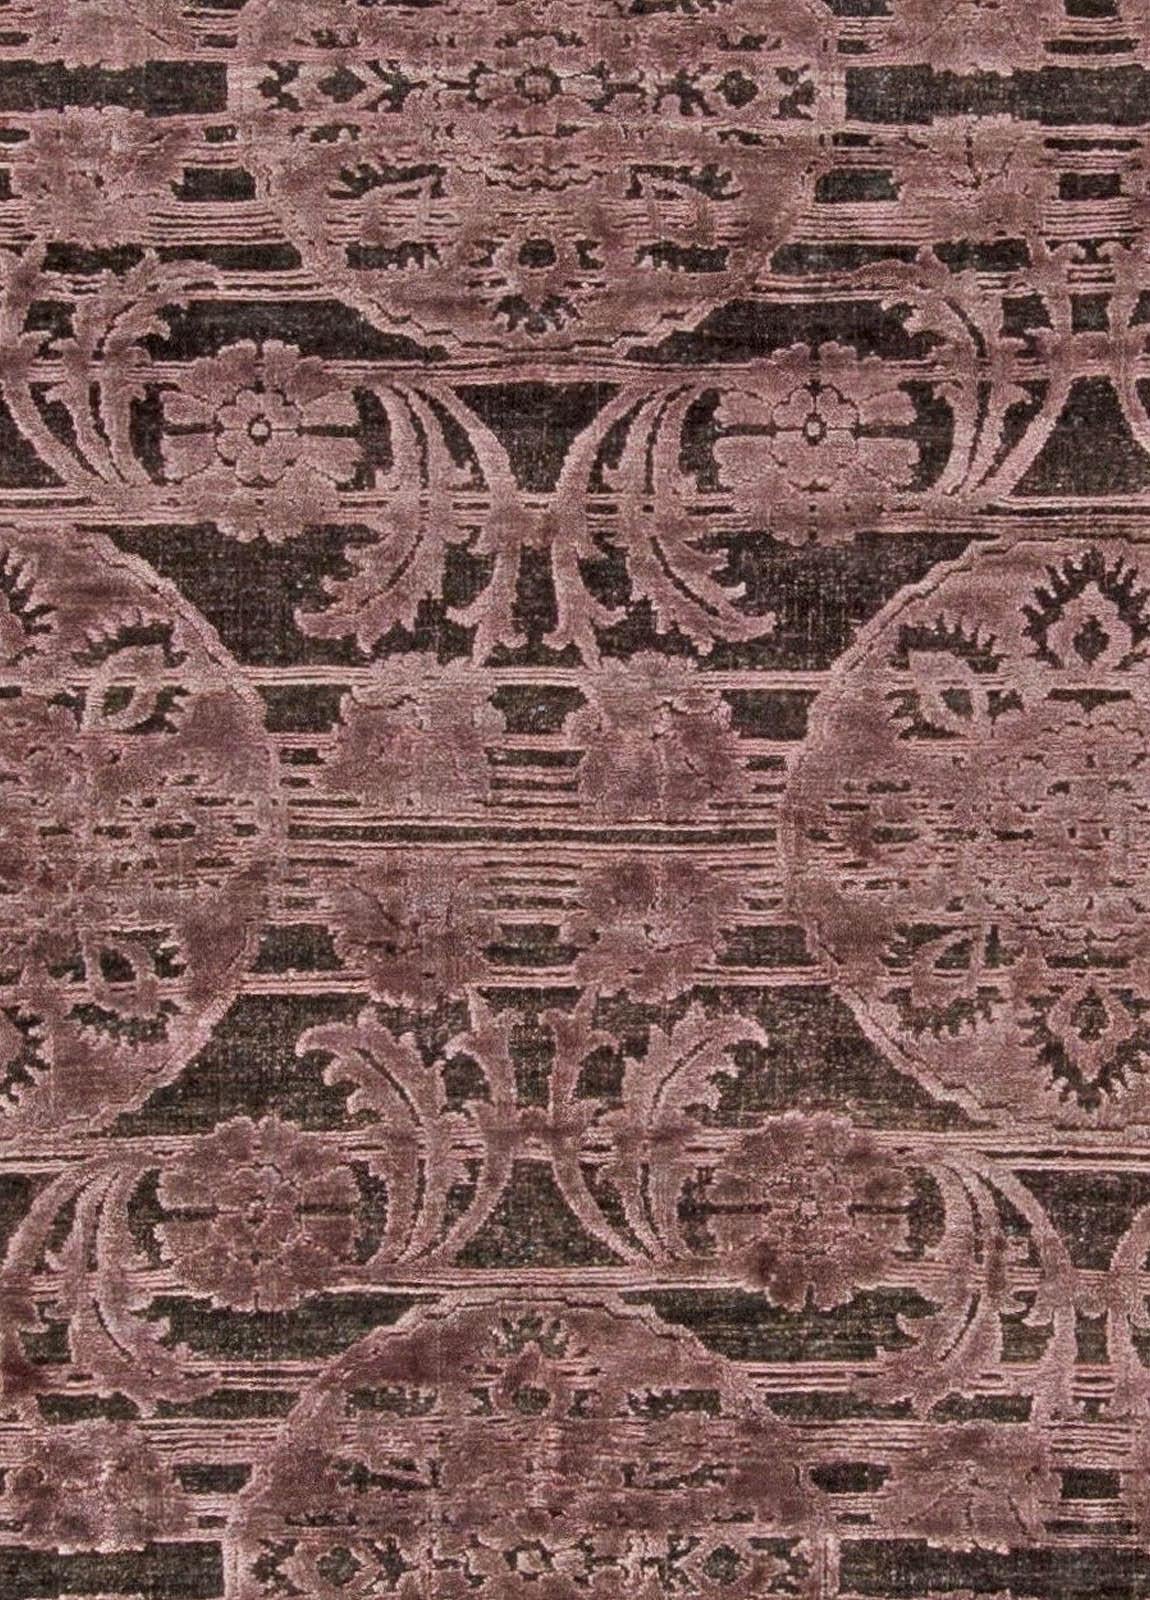 Tapis indien contemporain en laine fait à la main par Doris Leslie Blau.
Dimensions : 365 × 535 cm (12'0